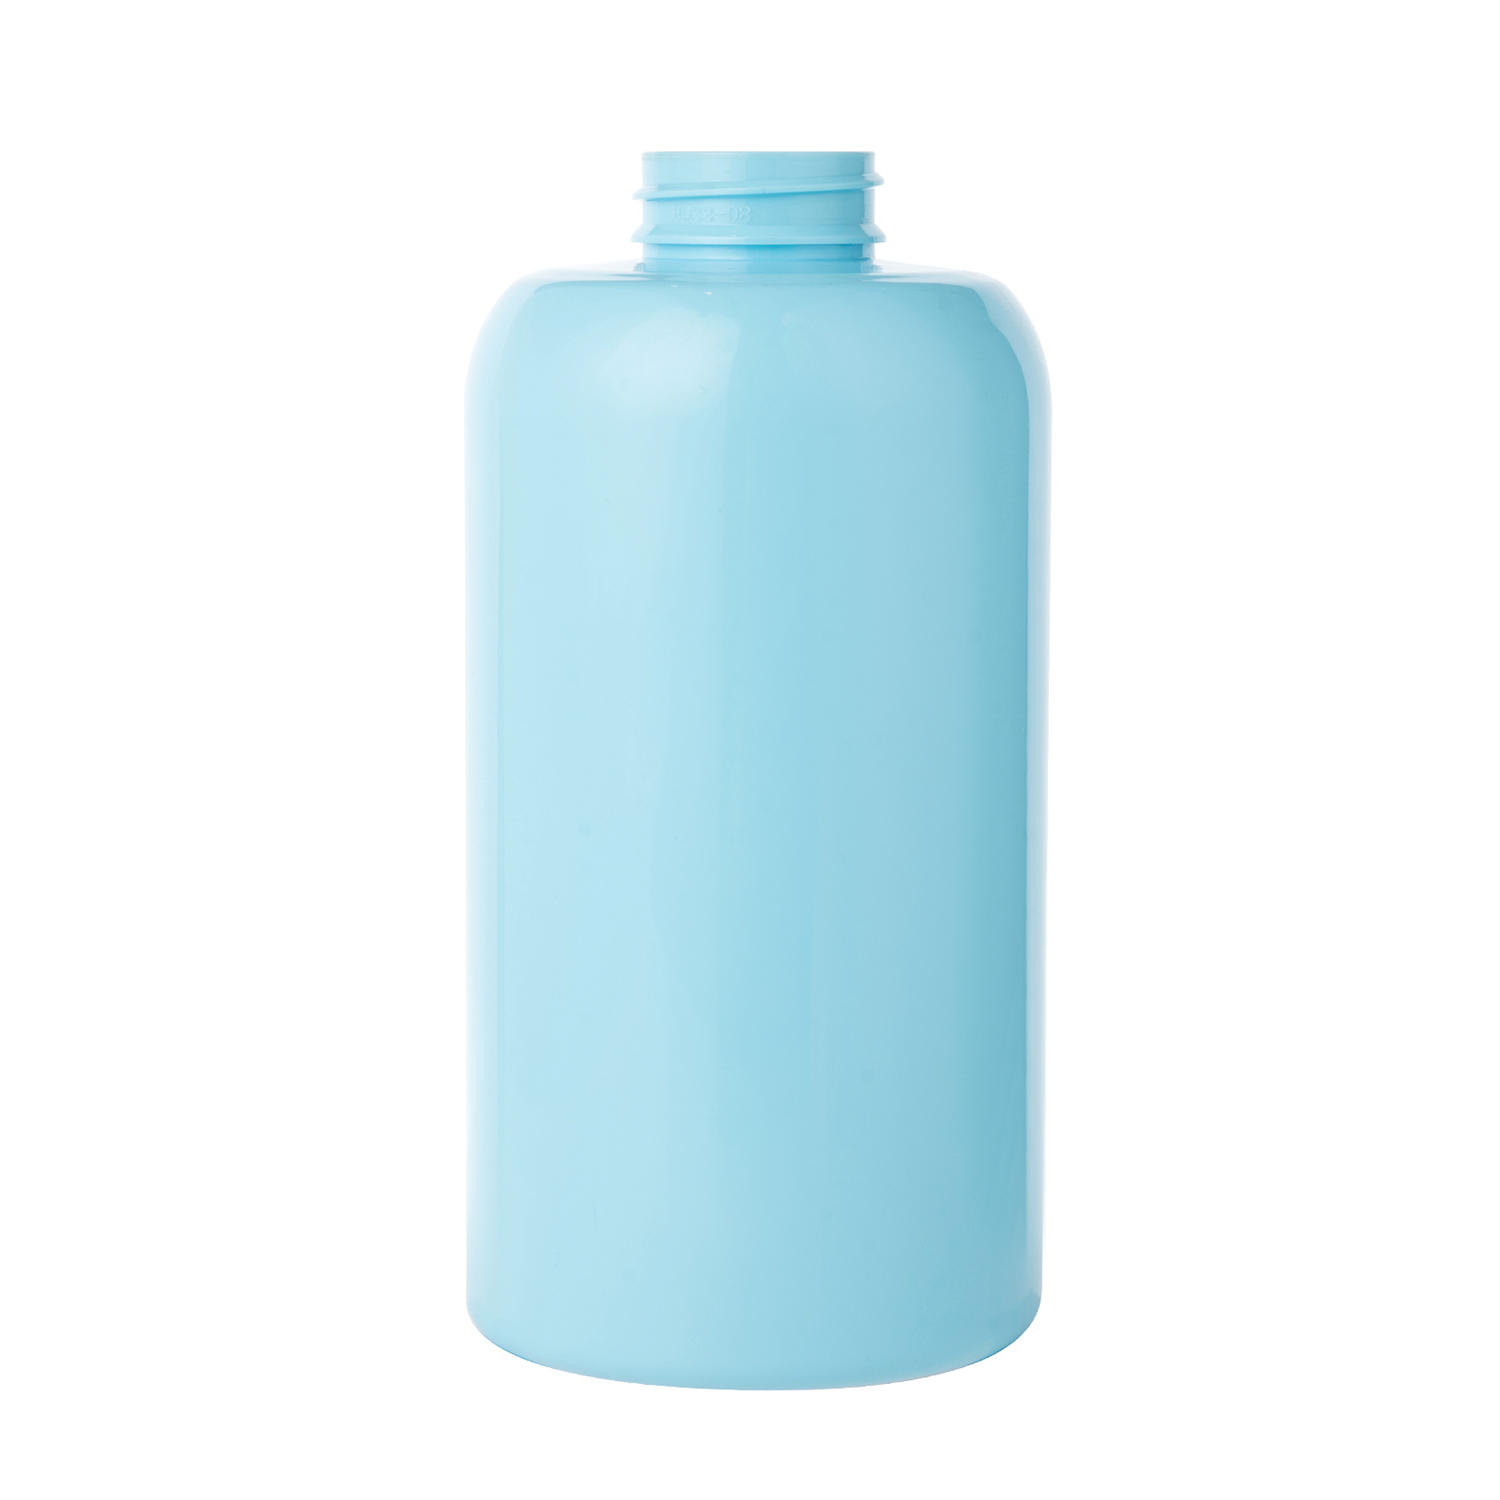 300ml 450ml 600ml PET Plastic Bottle Shampoo Bottle Detergent Bottle